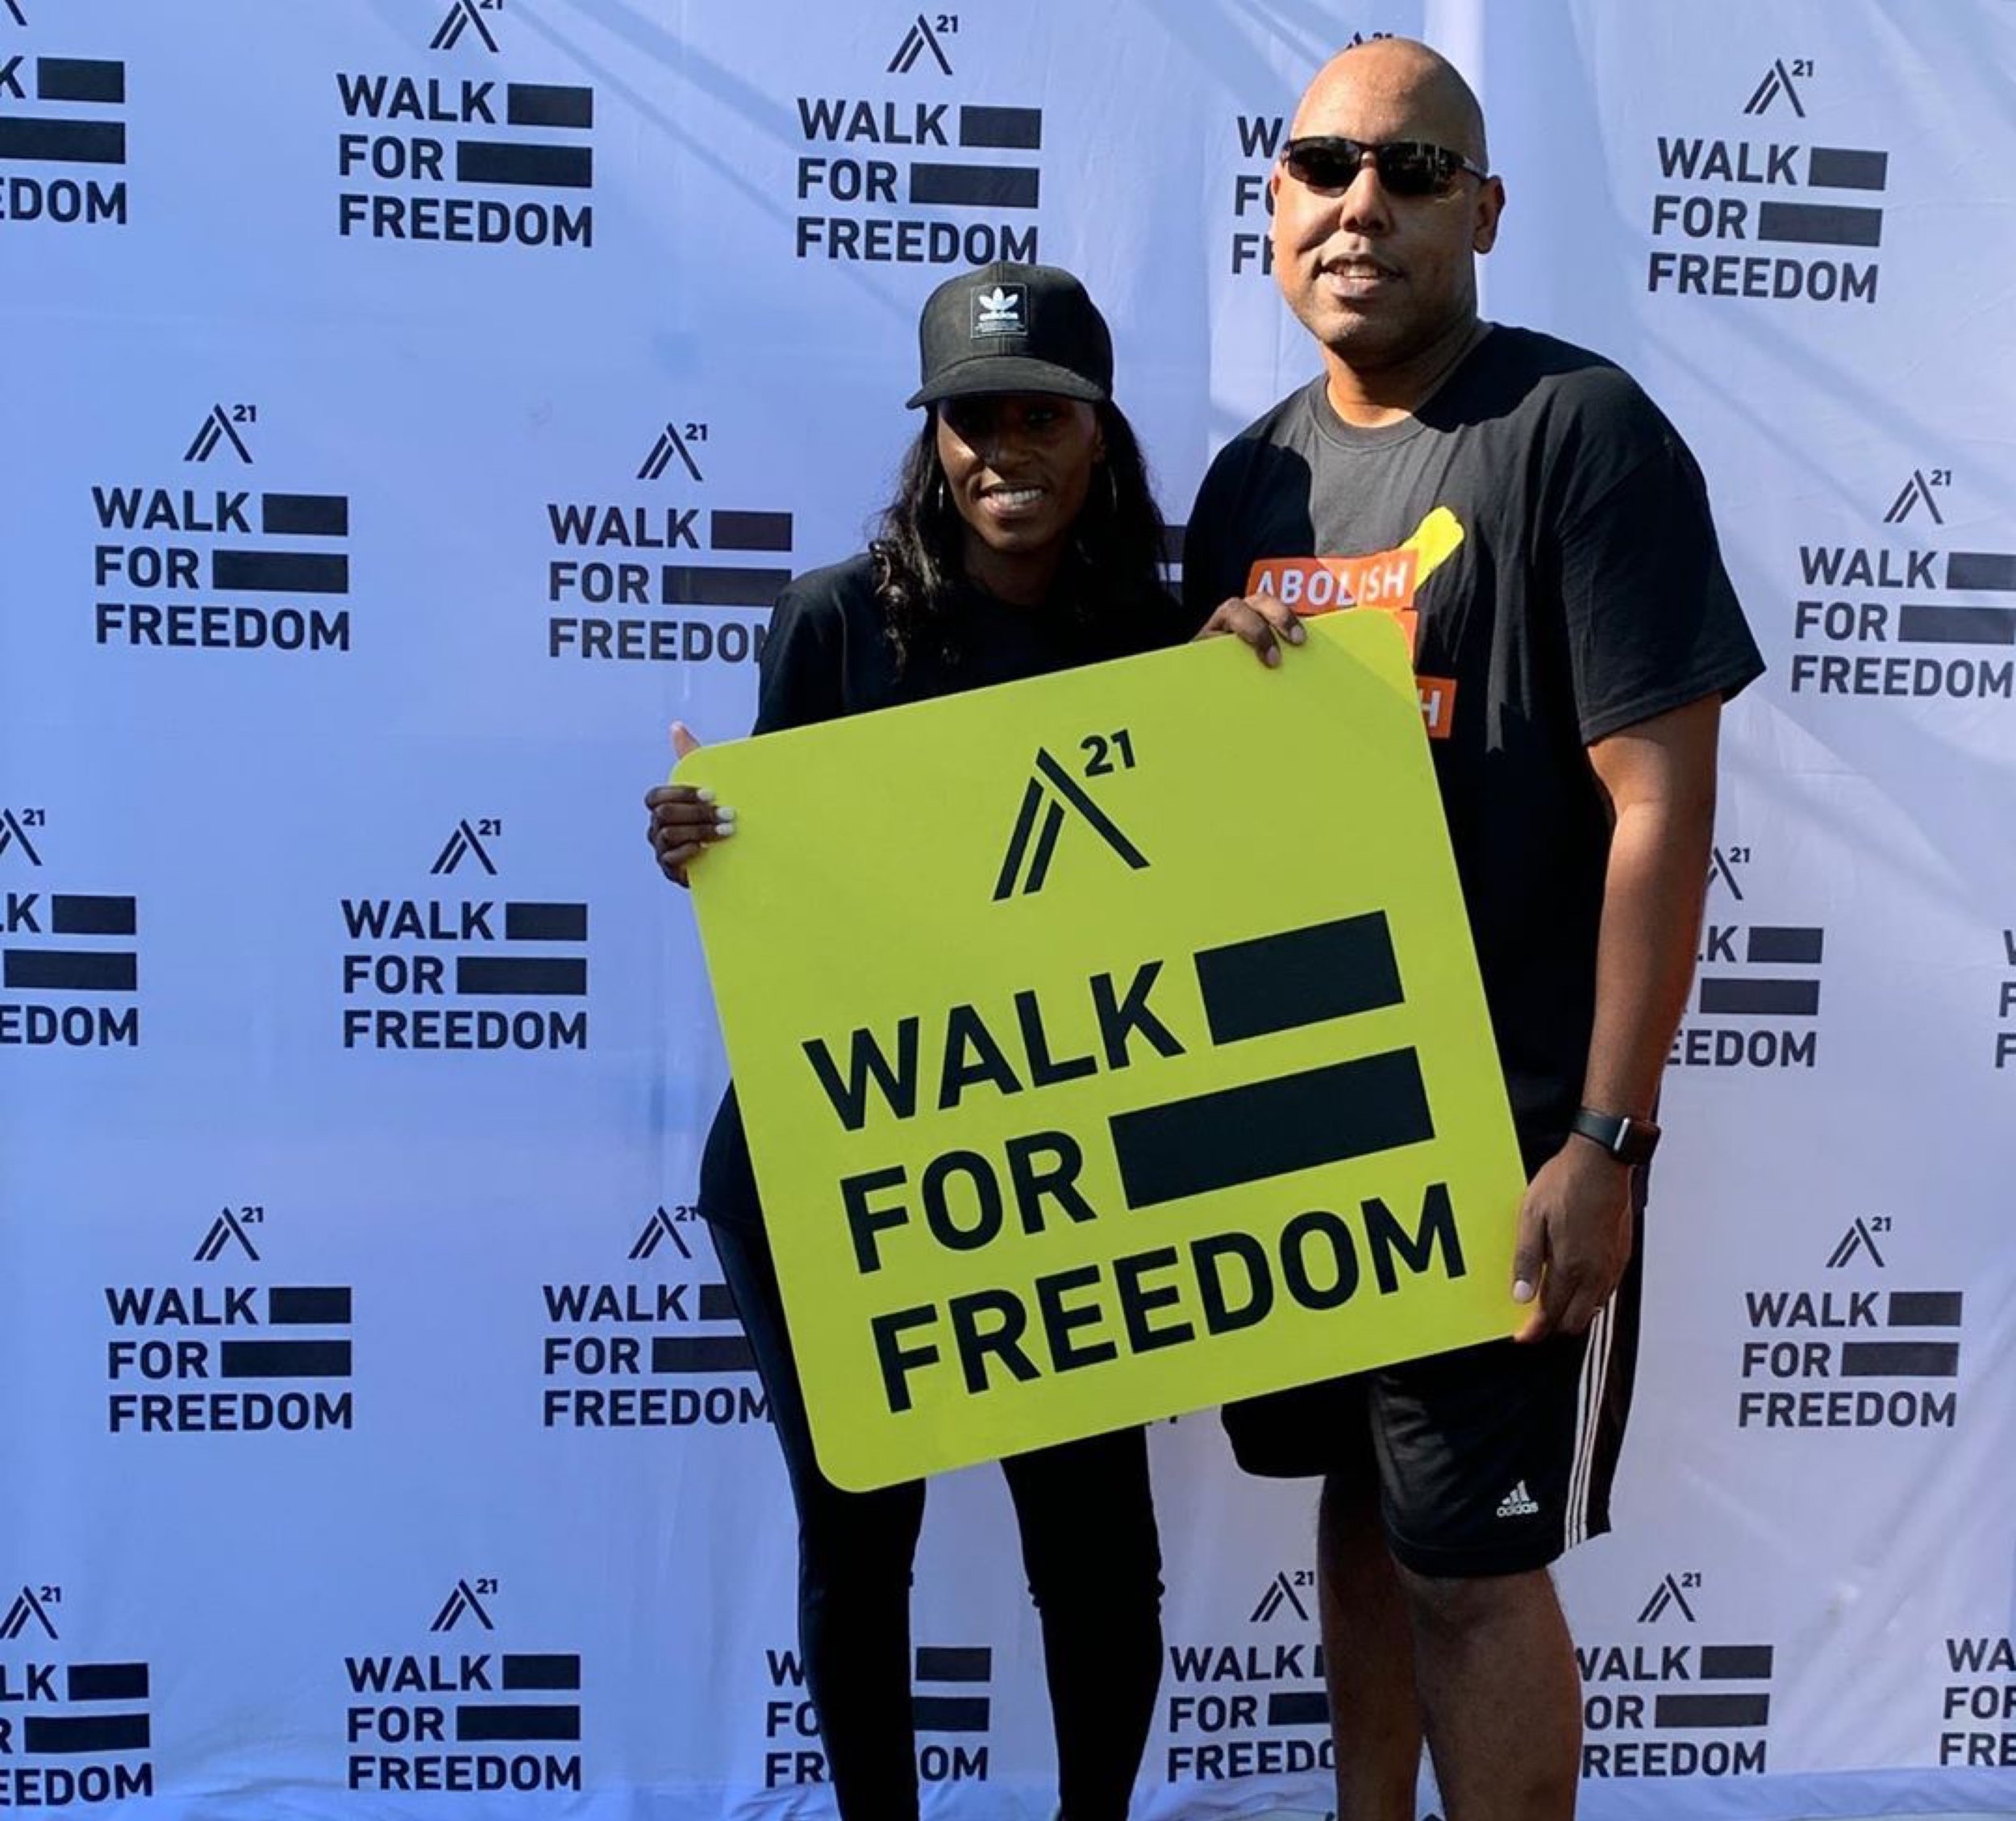 Kathy and Husband A21 Walk 2019.JPG